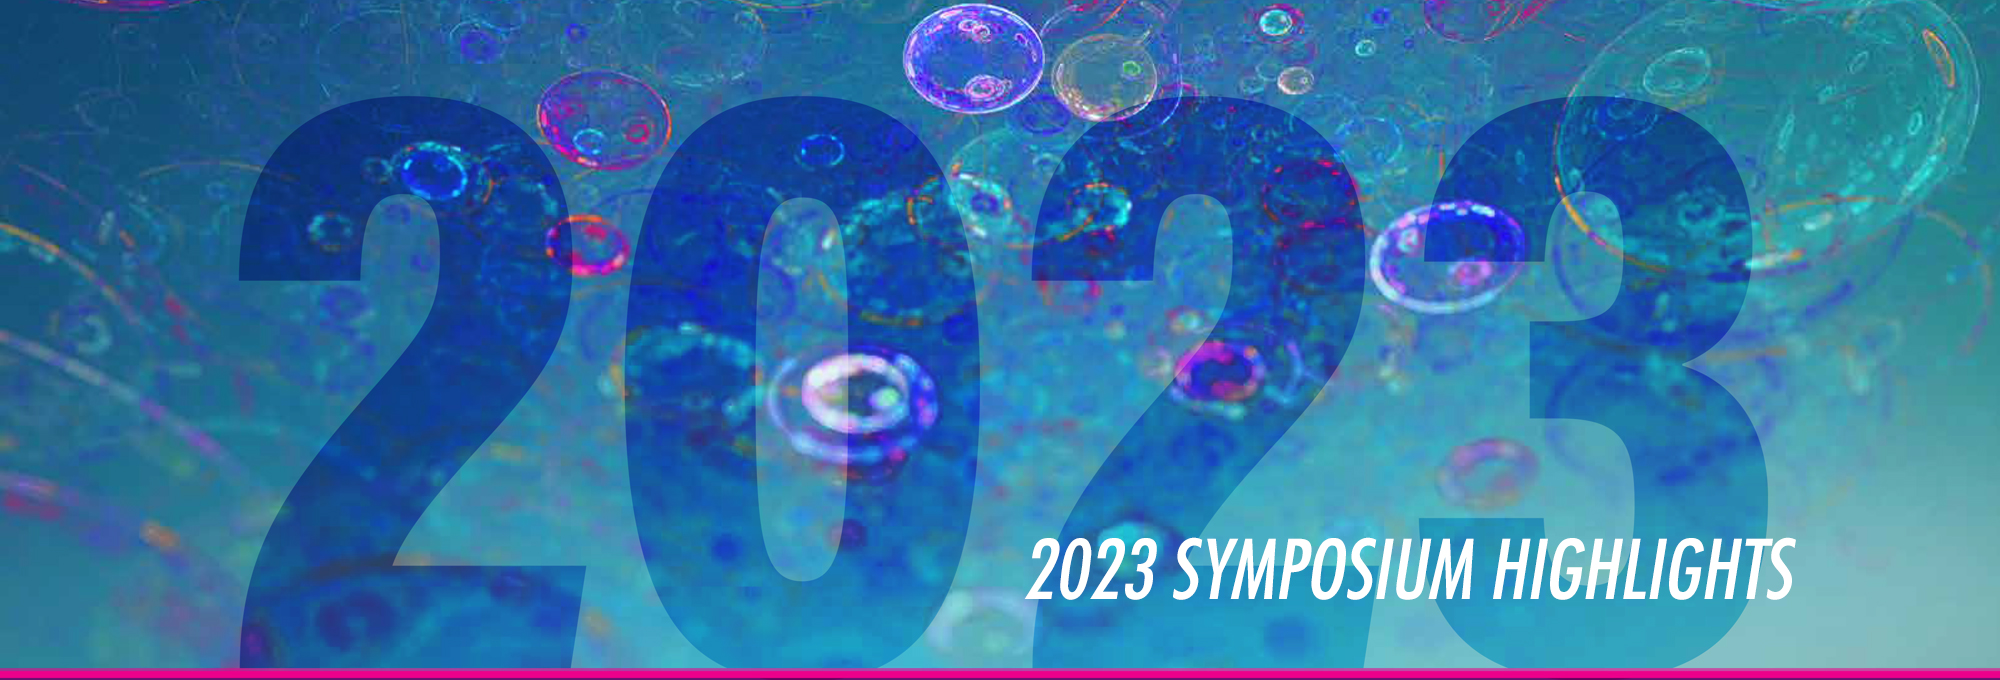 2023 Symposium Highlights